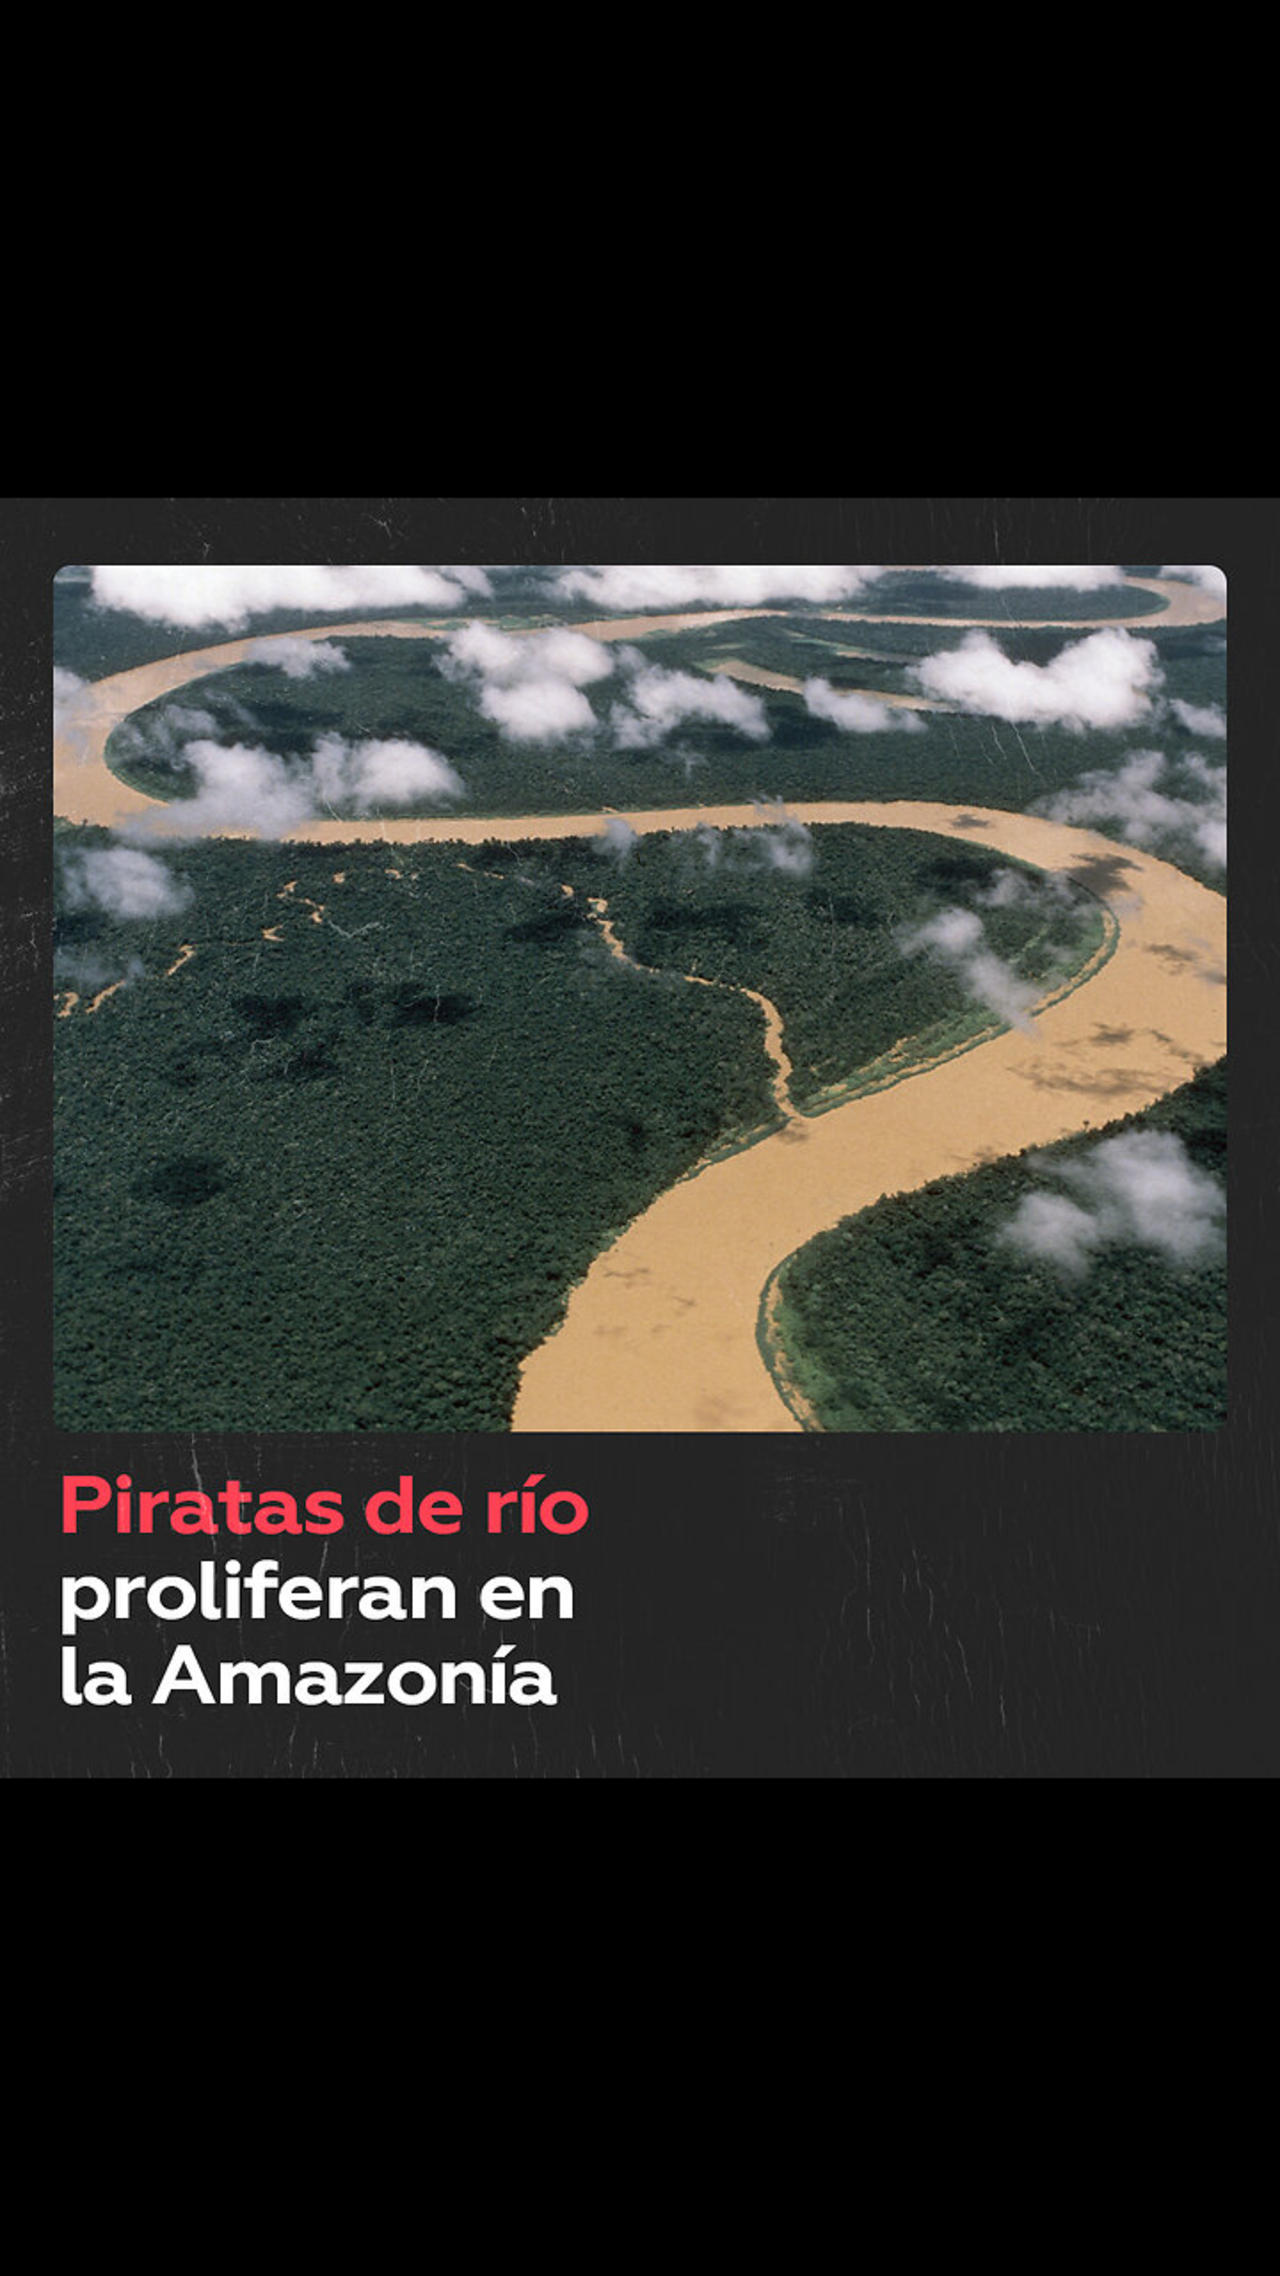 'Piratas de los ríos' asaltan a cargueros en la Amazonía